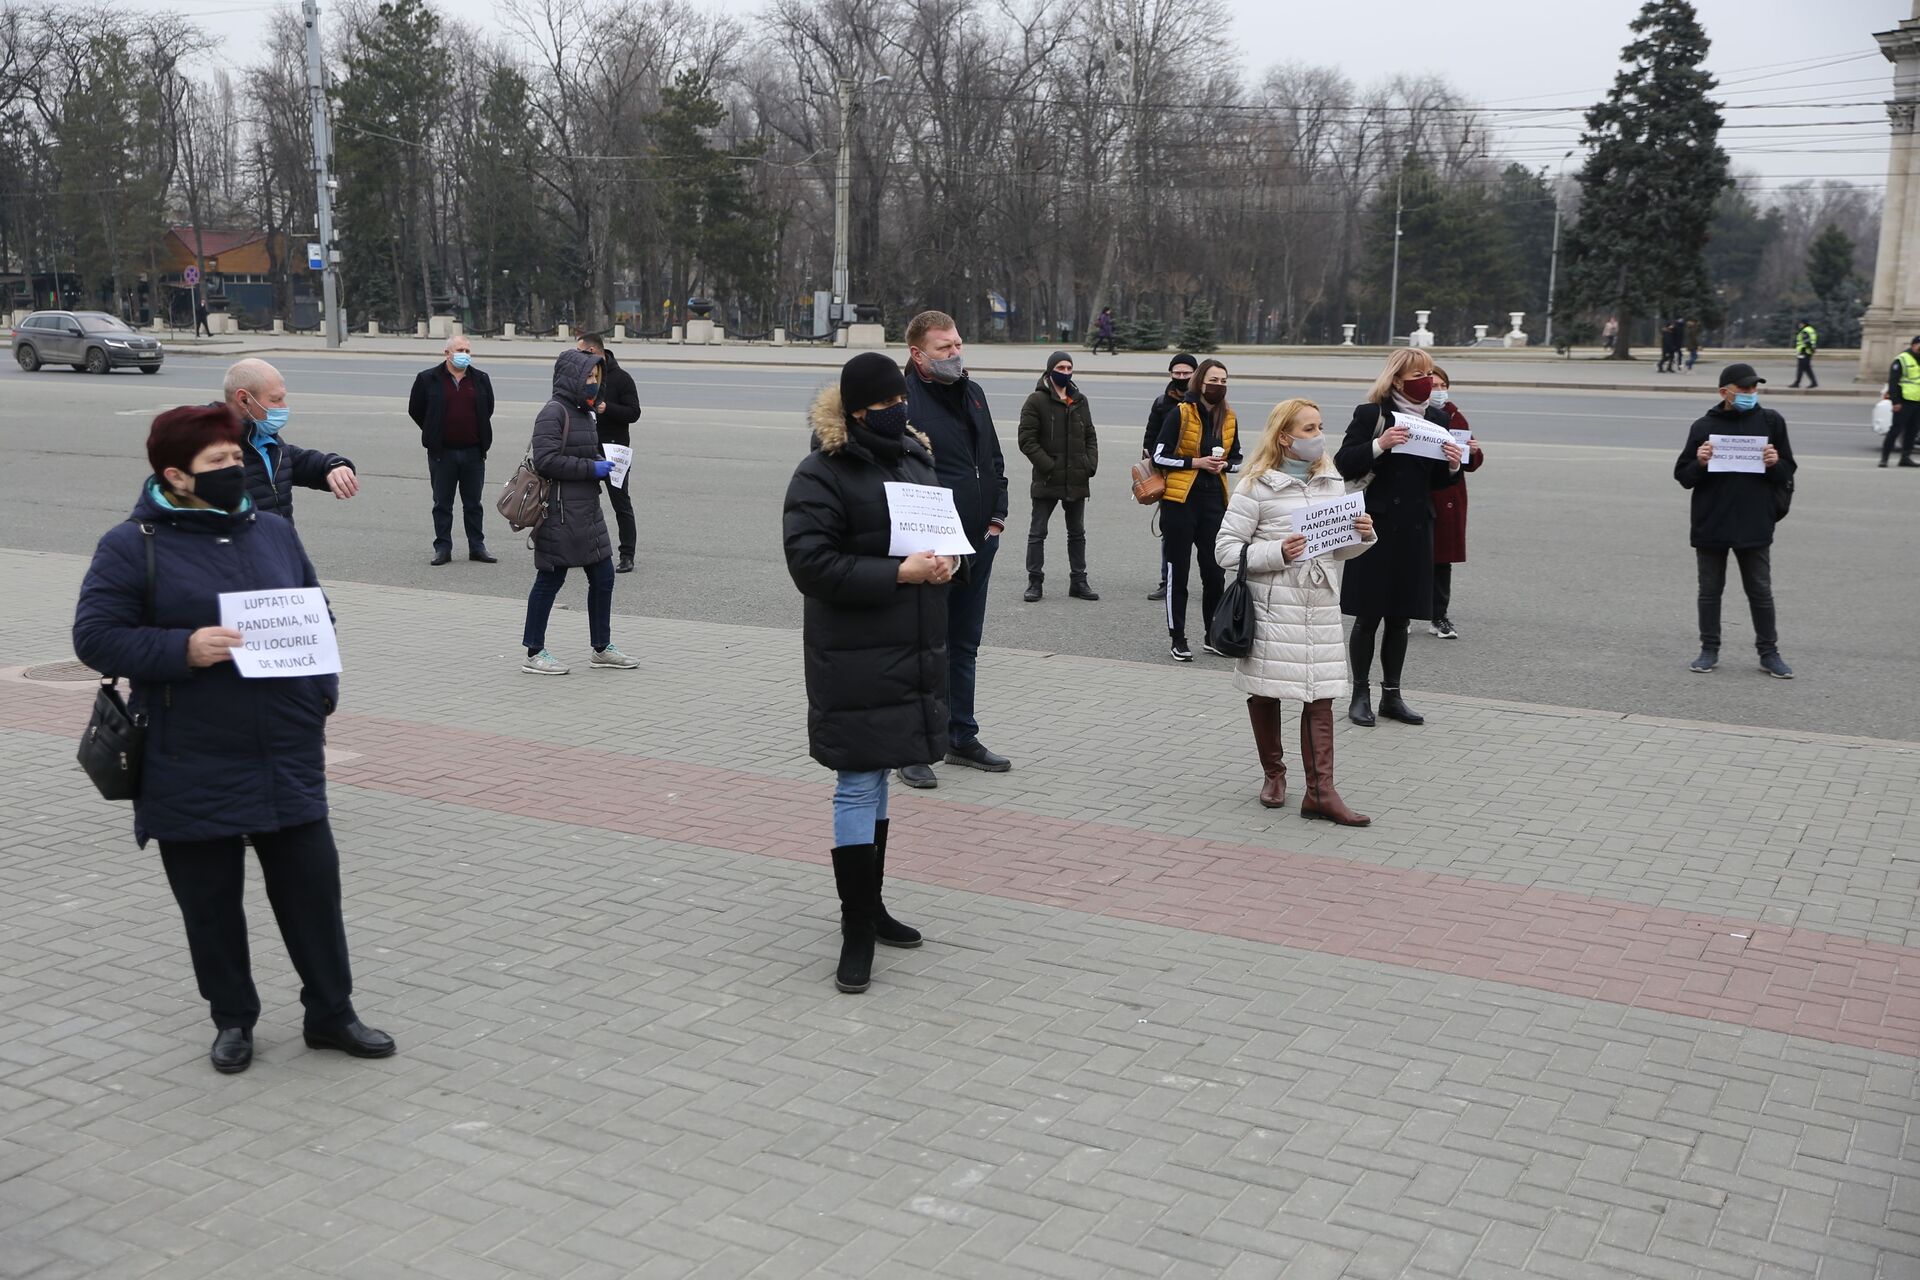 Видео, фото: Хотим работать! – в Кишиневе на митинг вышли десятки людей - Sputnik Молдова, 1920, 05.03.2021